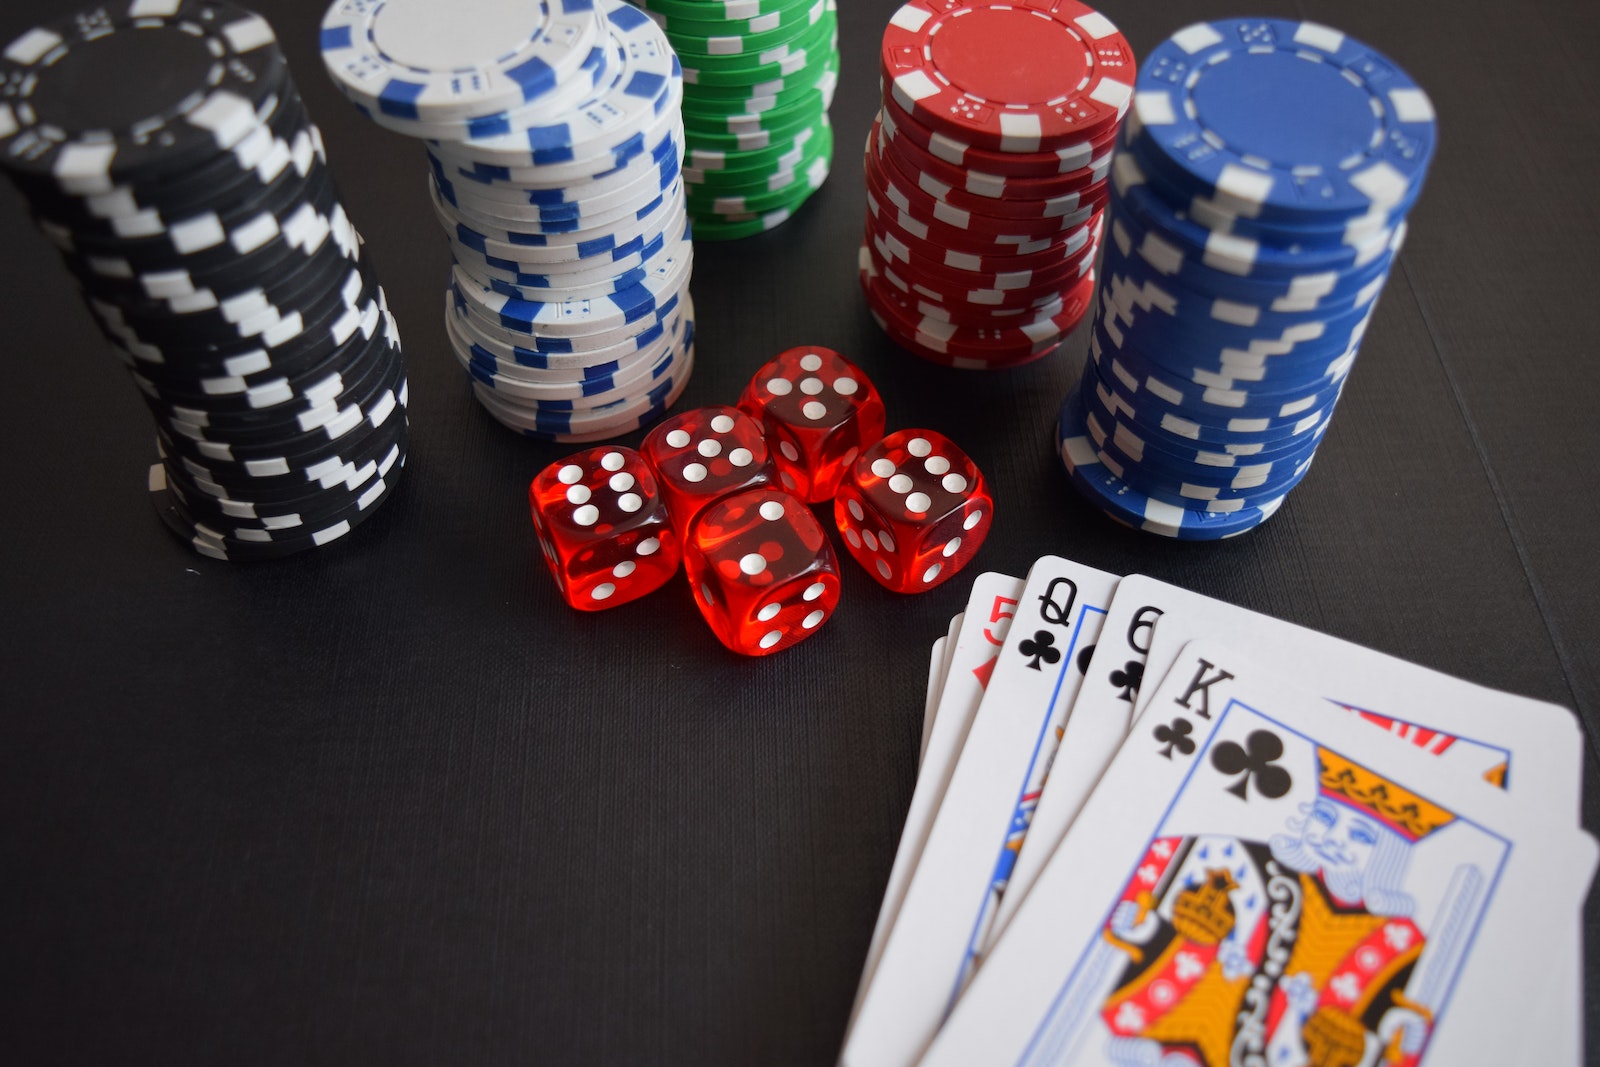 Les astuces pour bien jouer sur les casinos en ligne